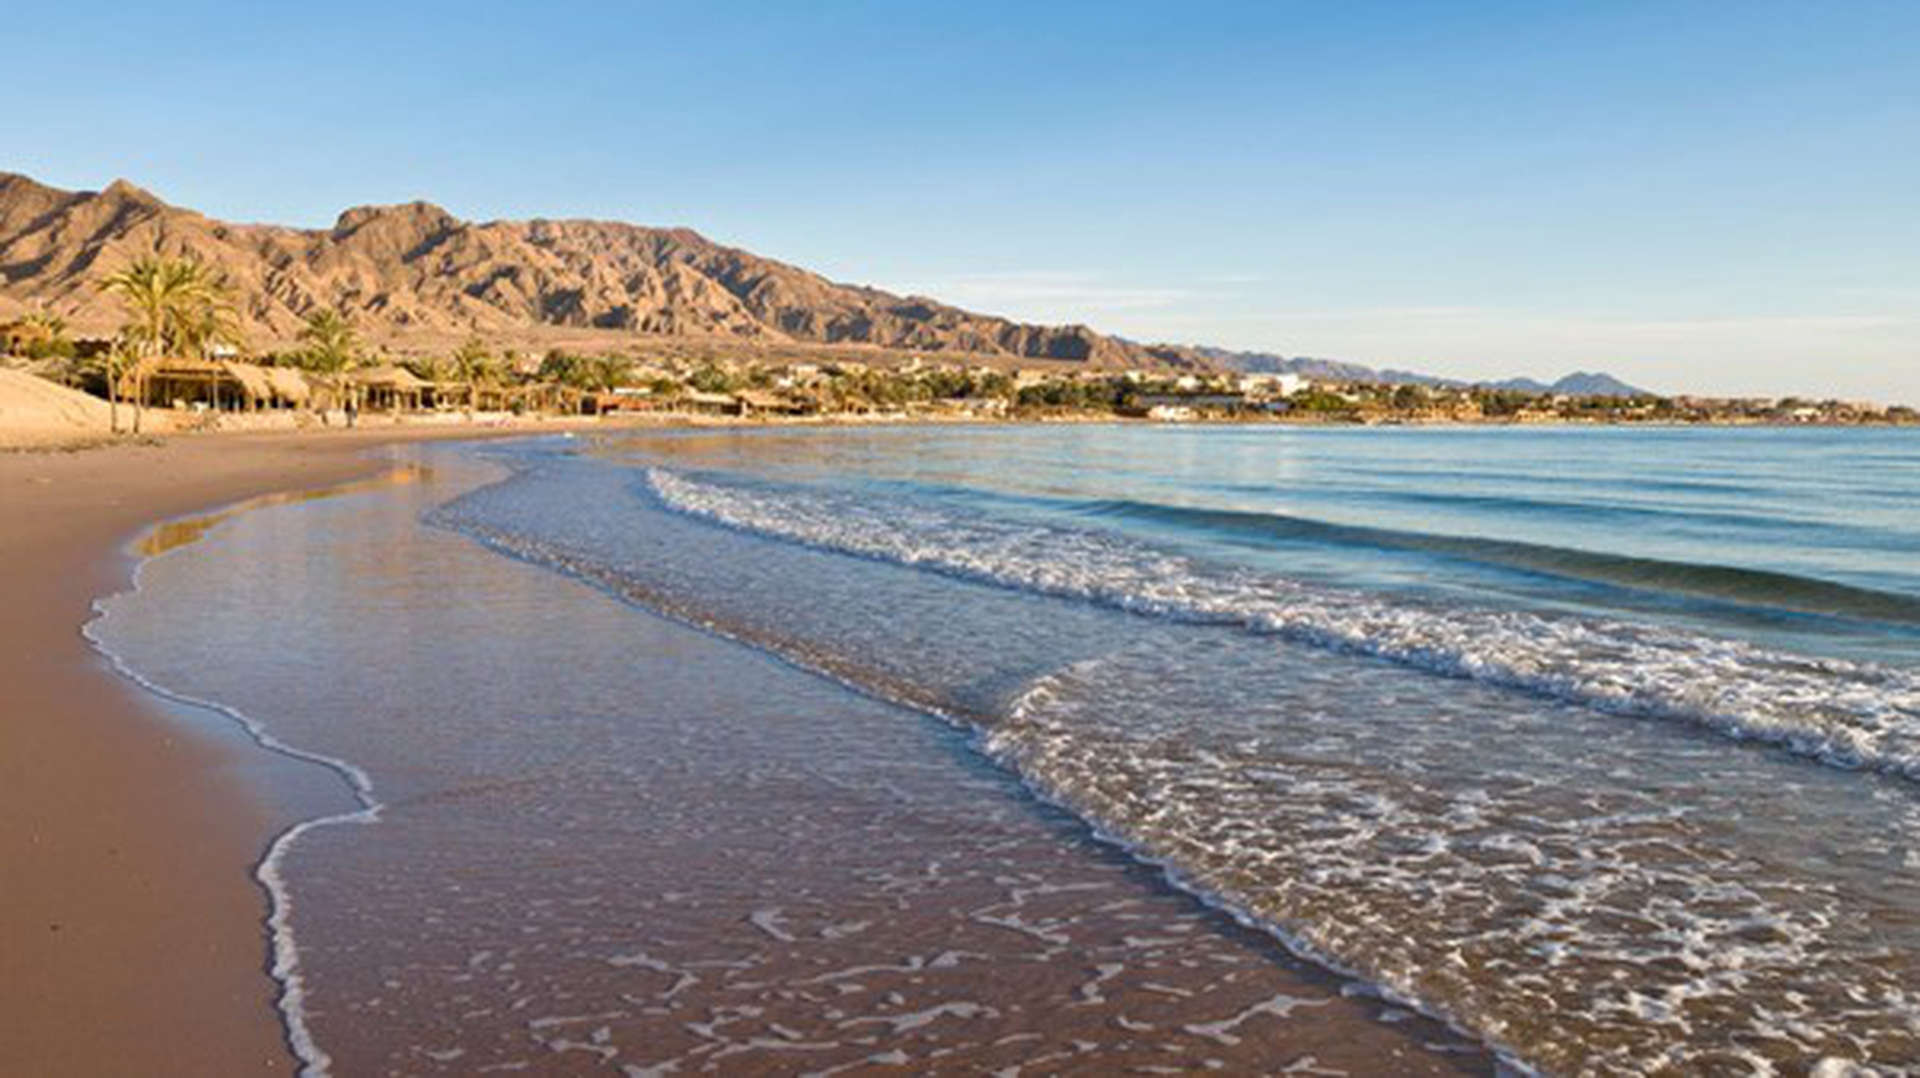 Dahab Strand in Ägyptens Sinai-Halbinsel. Ein goldener Strand mit leichten Wellen aus klarem Wasser und Bergen am Horizont.